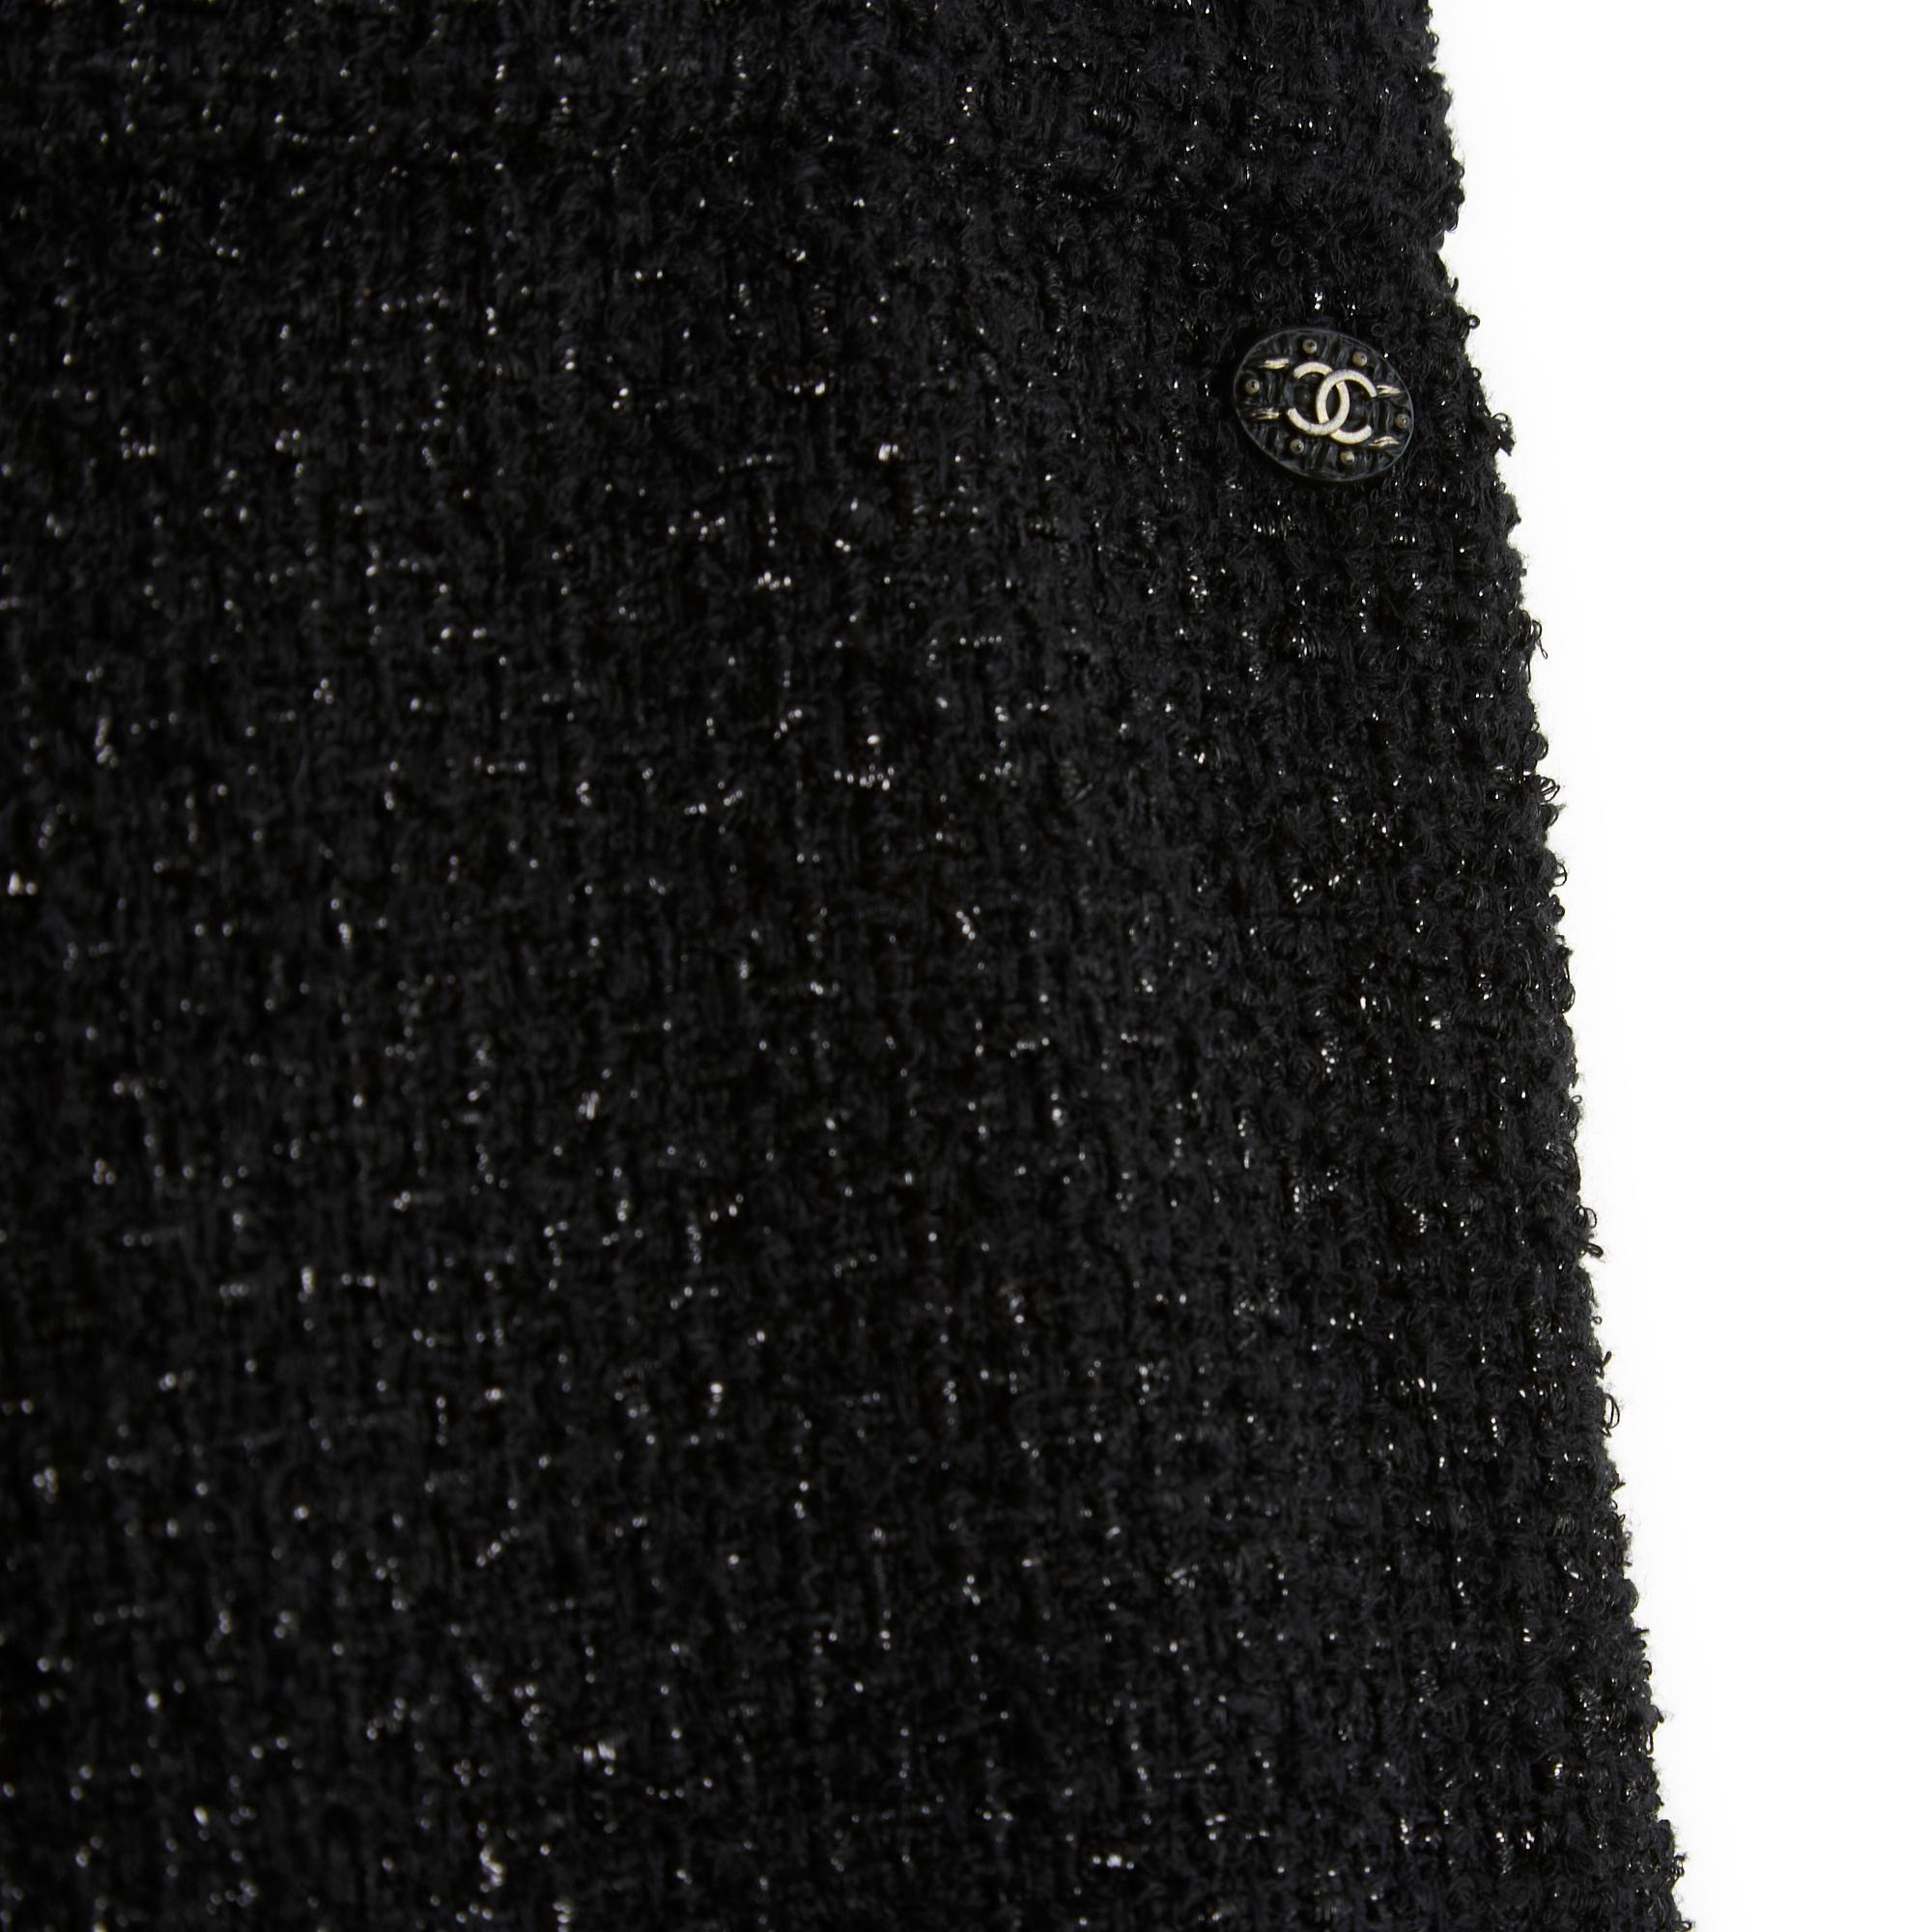 Chanel Hose Métiers d'Art 2018 Collection (Paris-Hamburg) aus schwarzem und schimmerndem Baumwoll-Tweed, hohe Taille, eng am Bein geschnitten, schwarzes Seidenfutter, Haken- und Reißverschluss vorne, CC-Logo aus geschwärztem, mattem Metall auf der